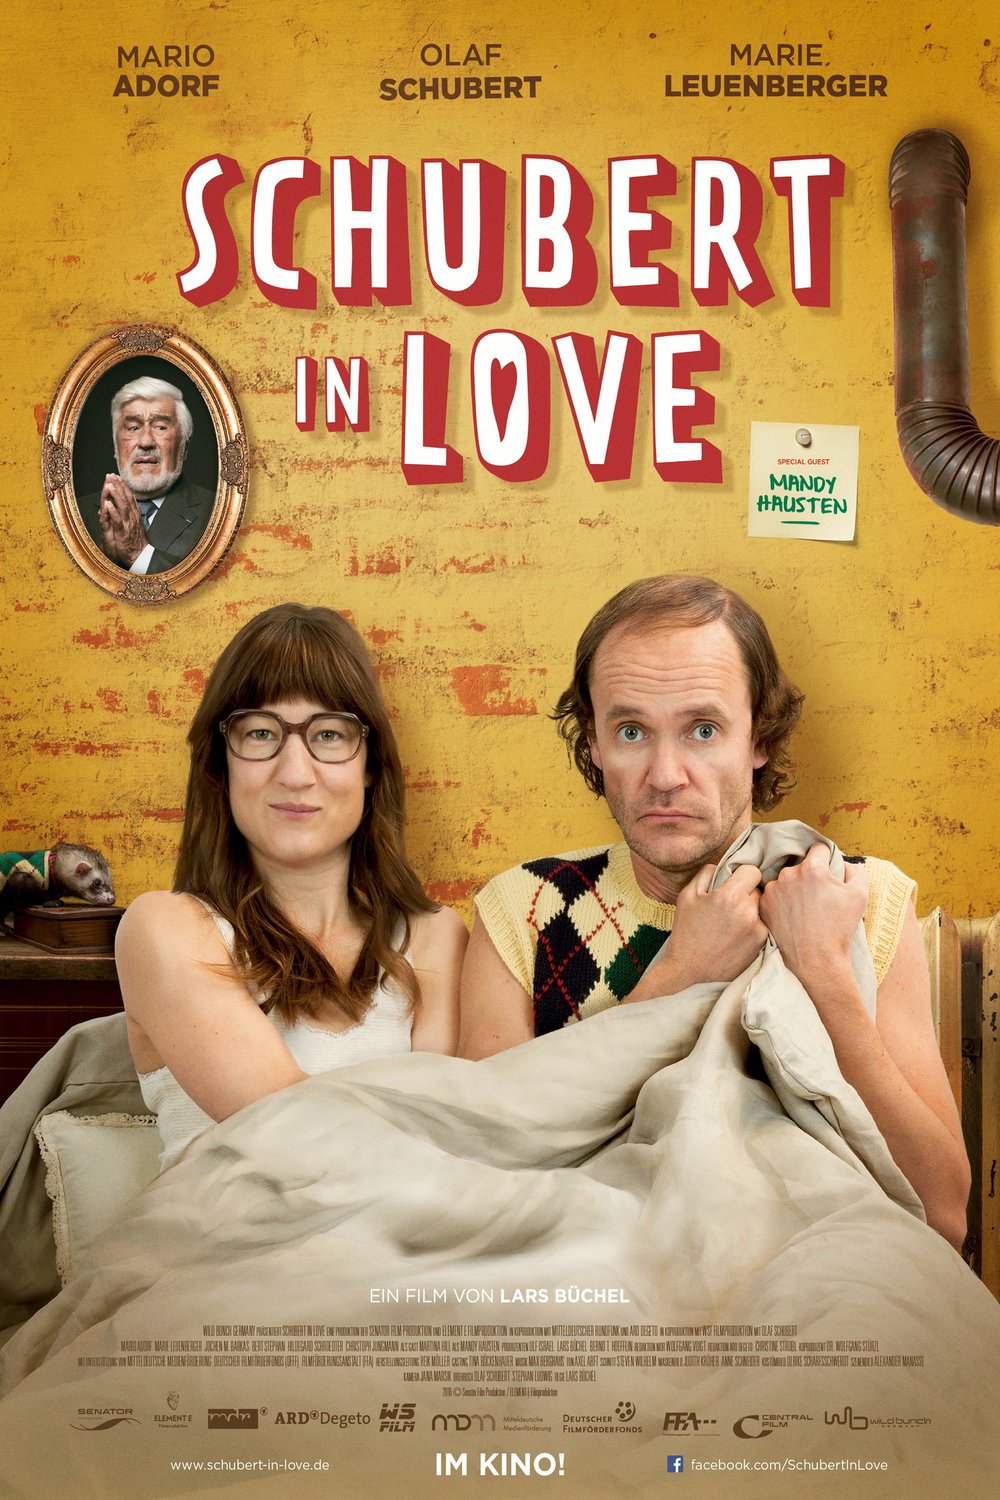 German poster of the movie Schubert in Love: Vater werden ist nicht schwer